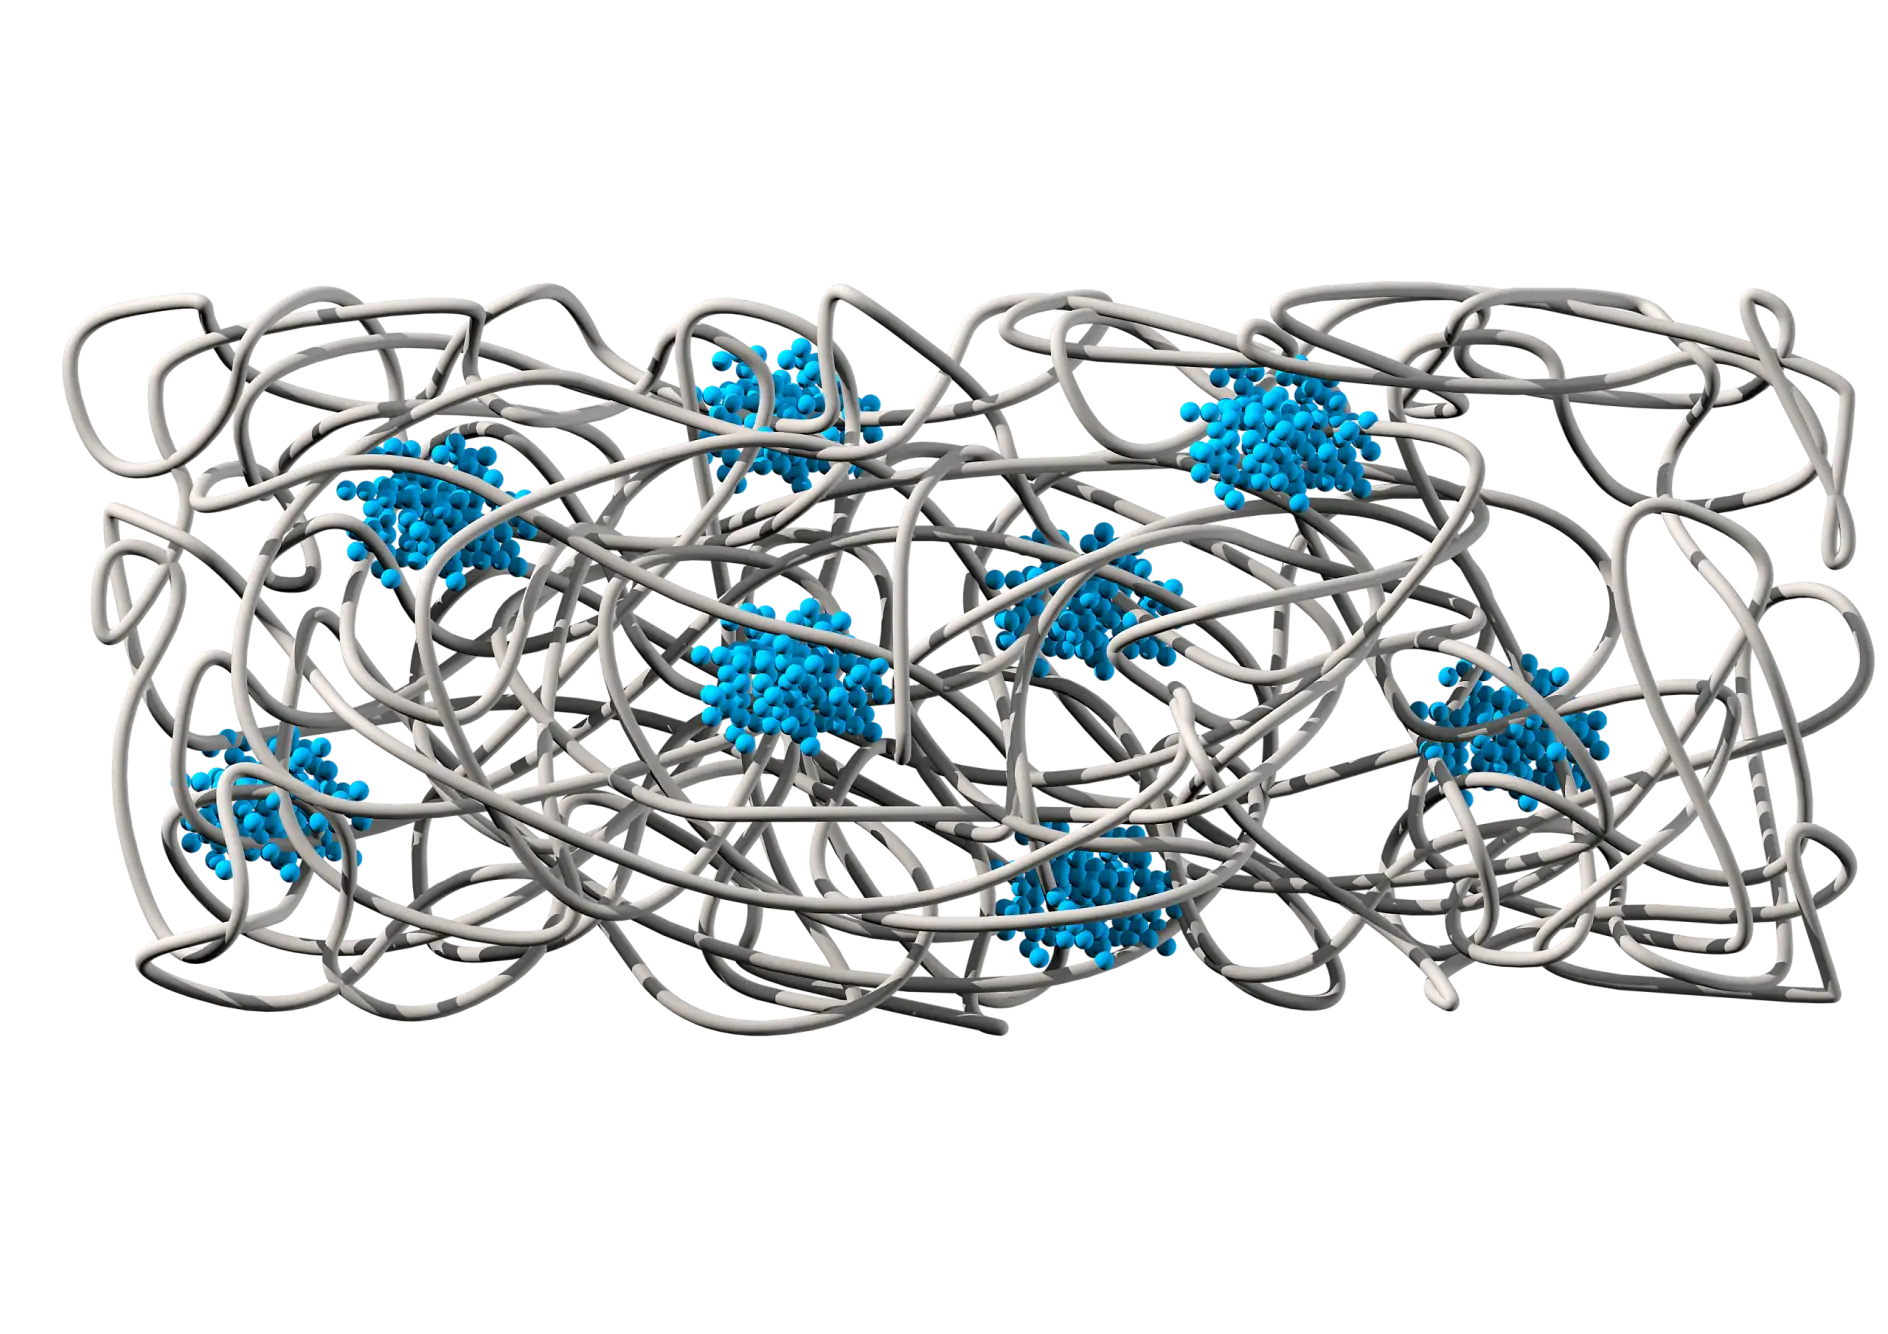 Chemickú štruktúru ilustruje matica gúm (sivá), ktorá poskytuje priľnavosť a elasticitu. Oblasti polystyrénu (modré) zabezpečujú kohéziu a odolnosť voči roztrhnutiu.